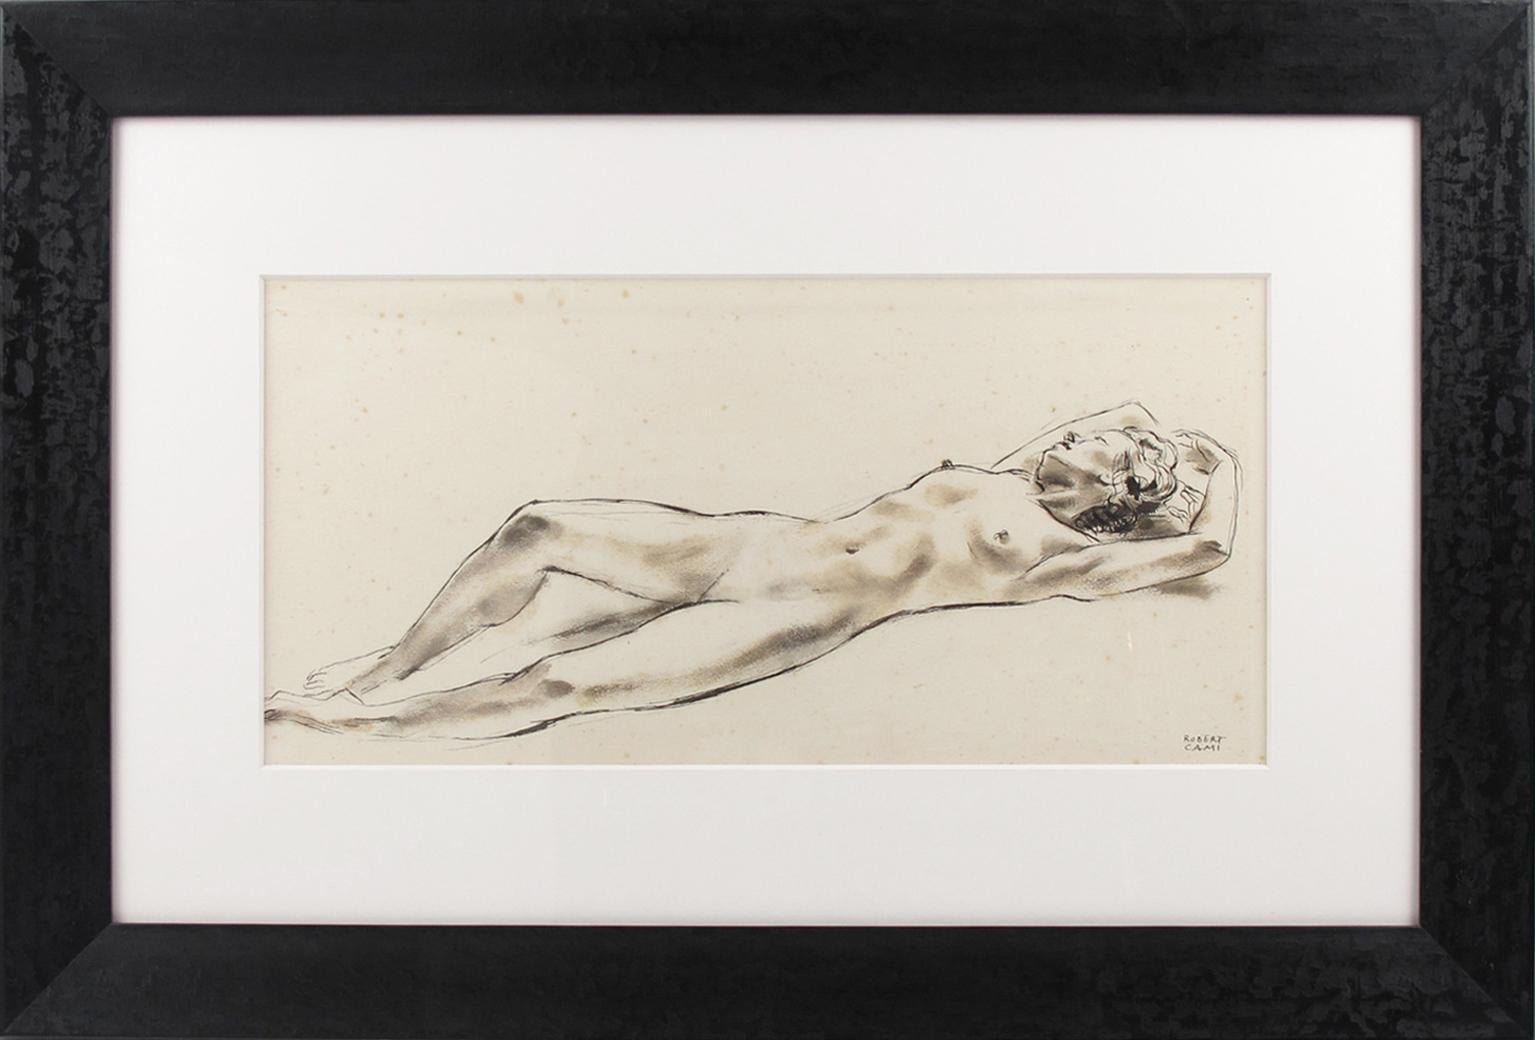 Interessante Tuschestudie eines Frauenakts des französischen Malers Robert Cami (1900-1975). Das Lavis-Verfahren, das zwischen Zeichnung und Malerei angesiedelt ist, besteht aus der Verwendung eines im Wasser verdünnten Pigments, insbesondere der